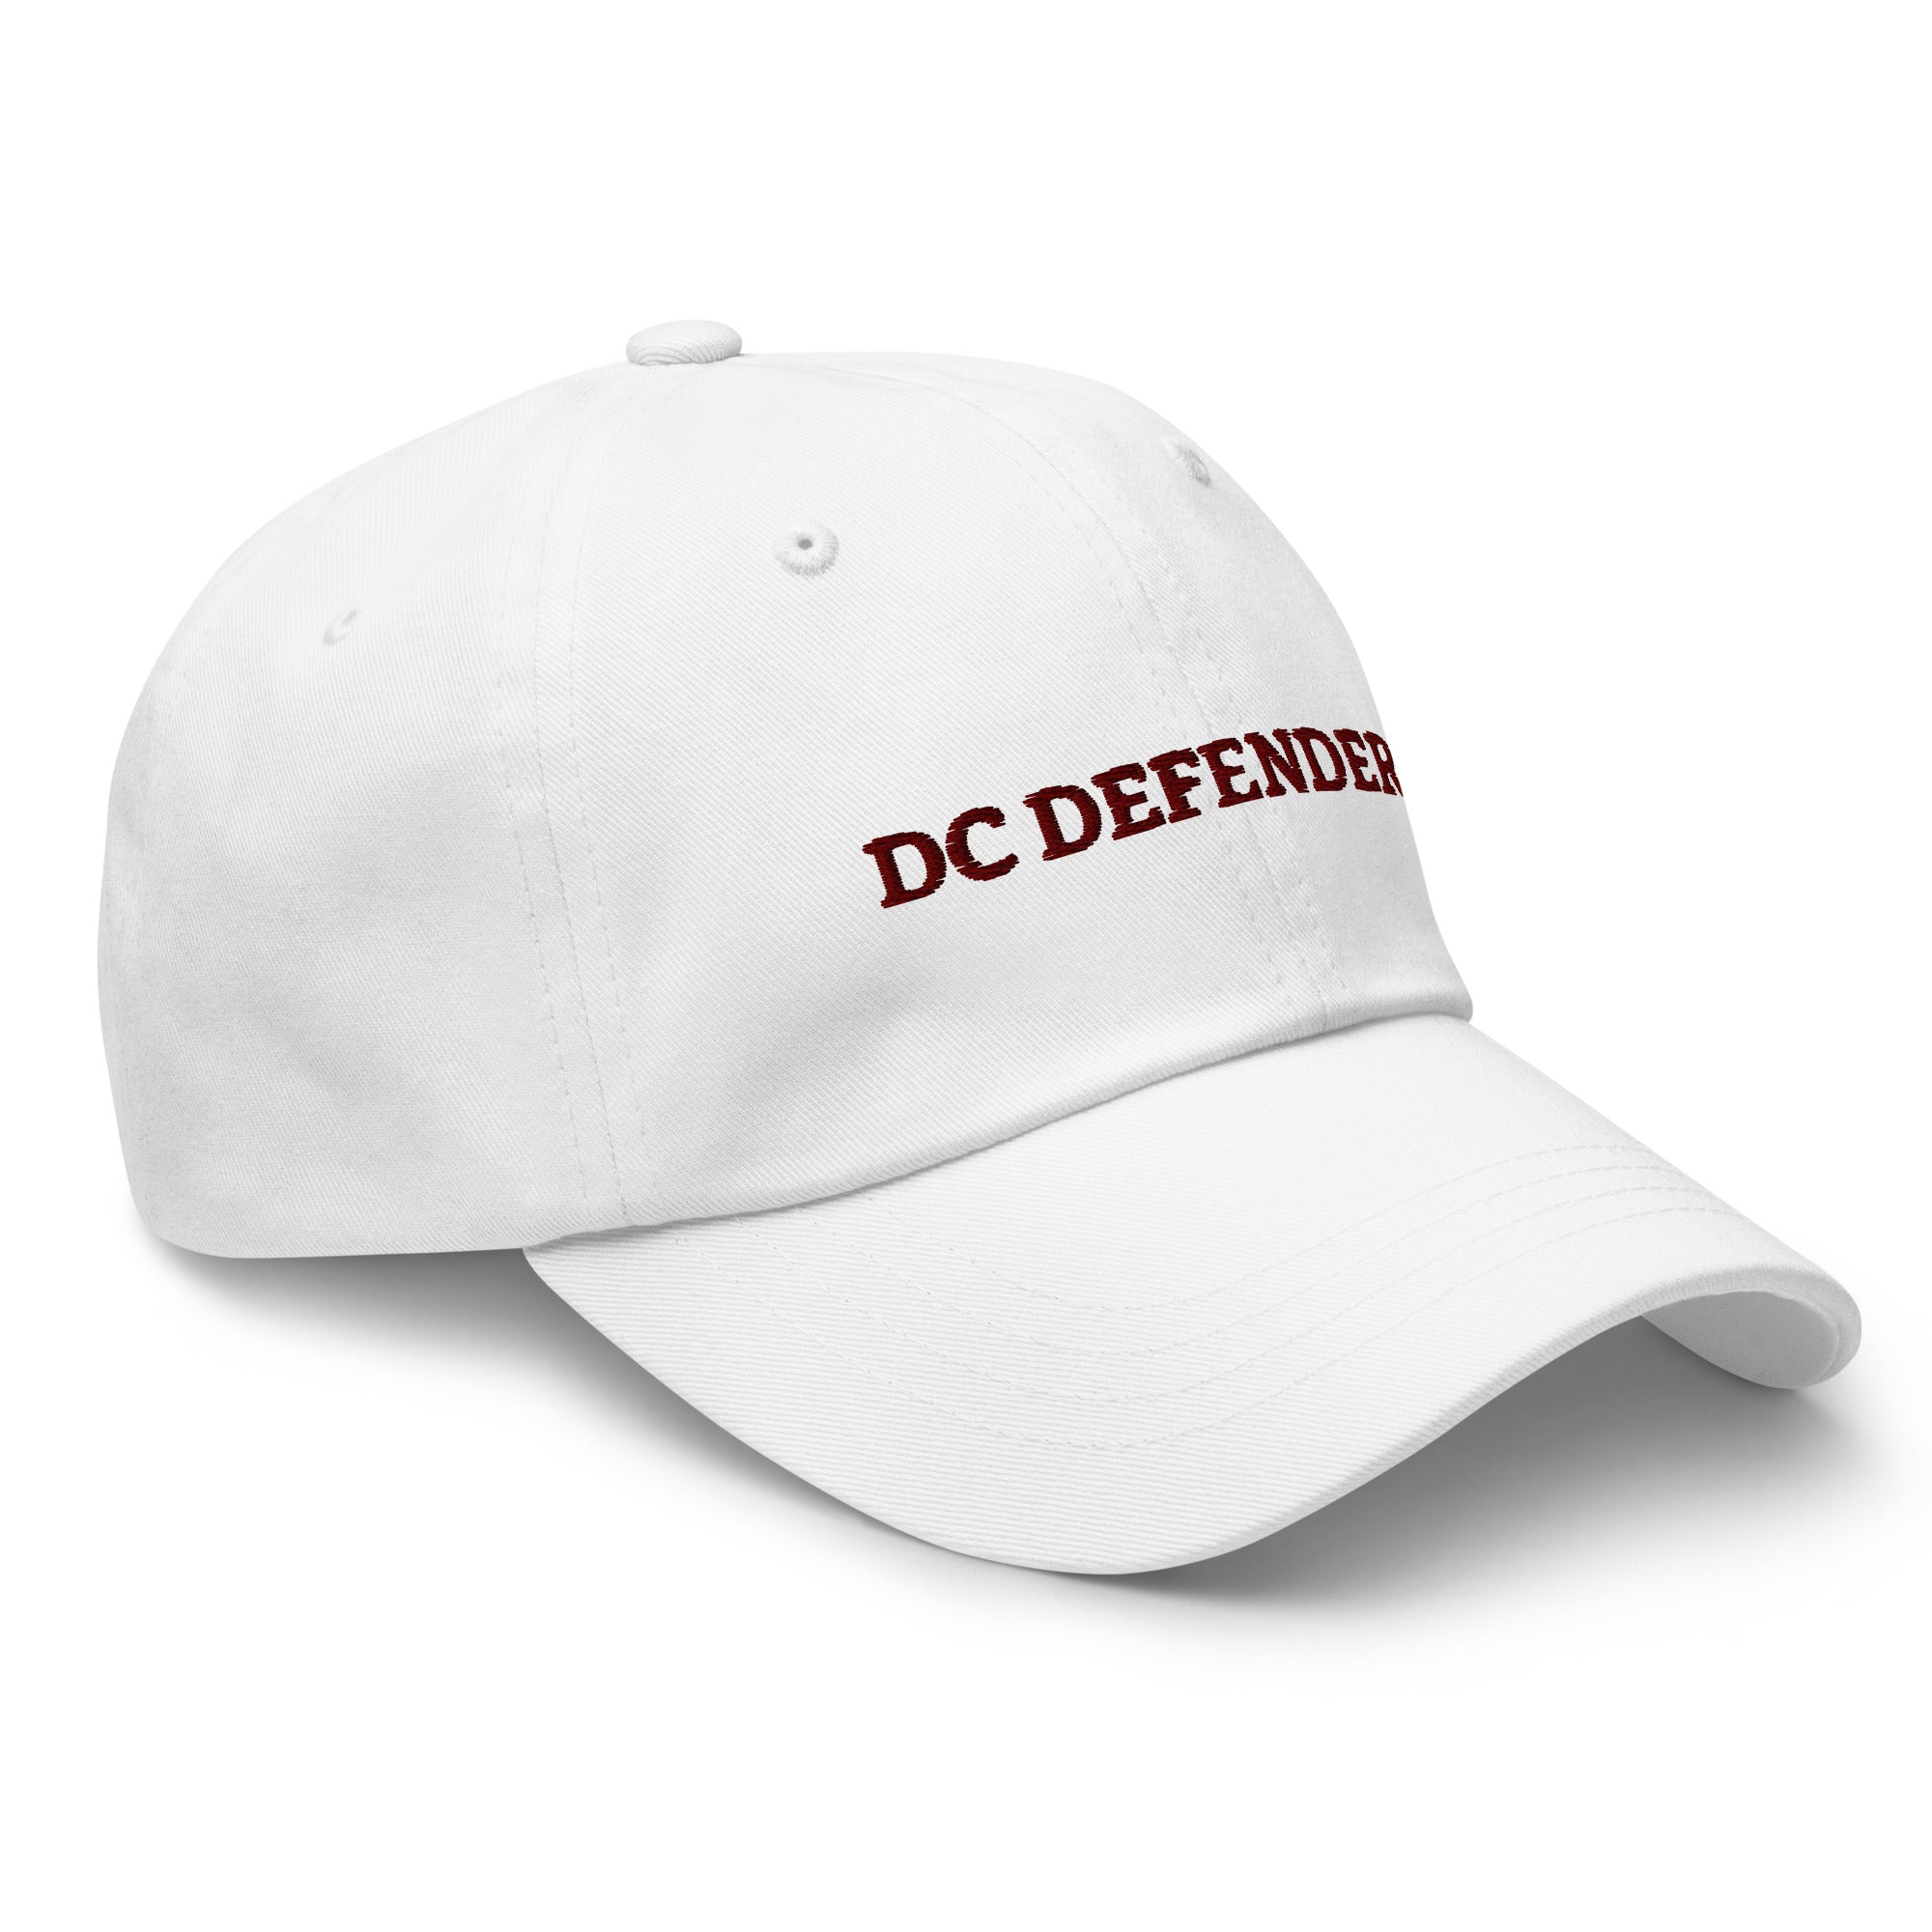 TDCD Dad hat